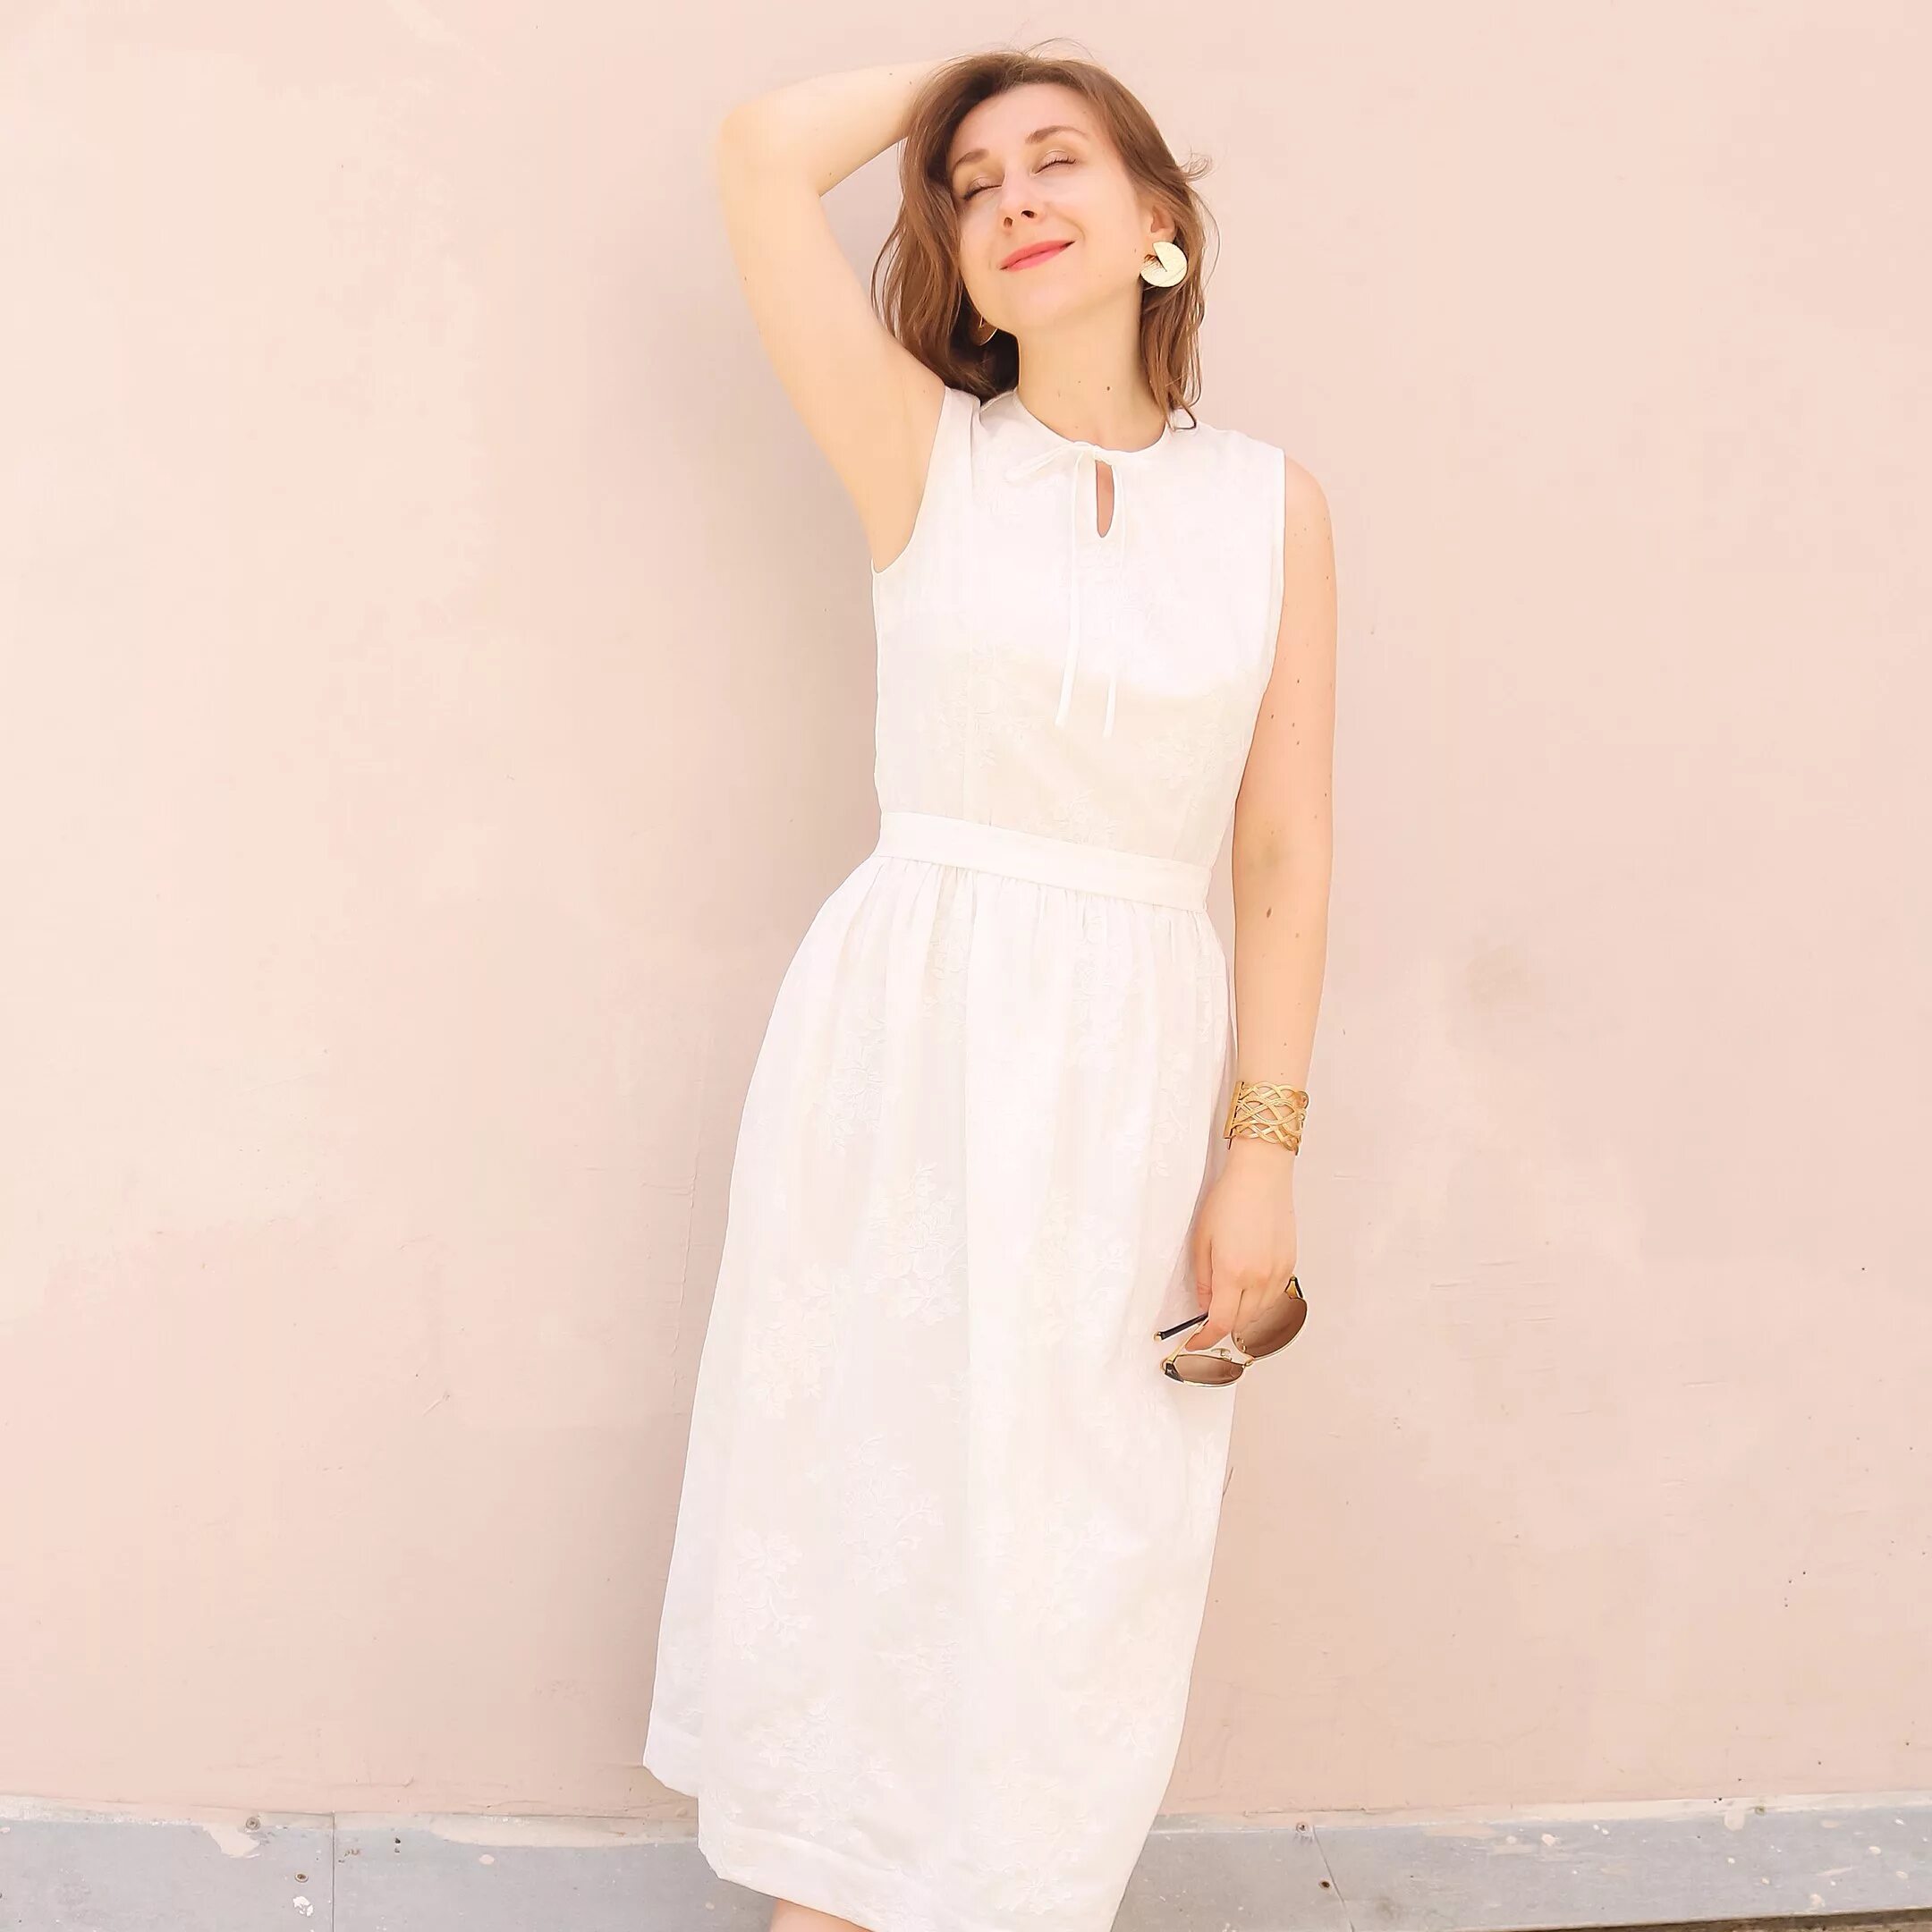 Белое платье из хлопка. Белое платье. Платье из хлопка. Нежное летнее платье. Летние платья из хлопкового шитья.